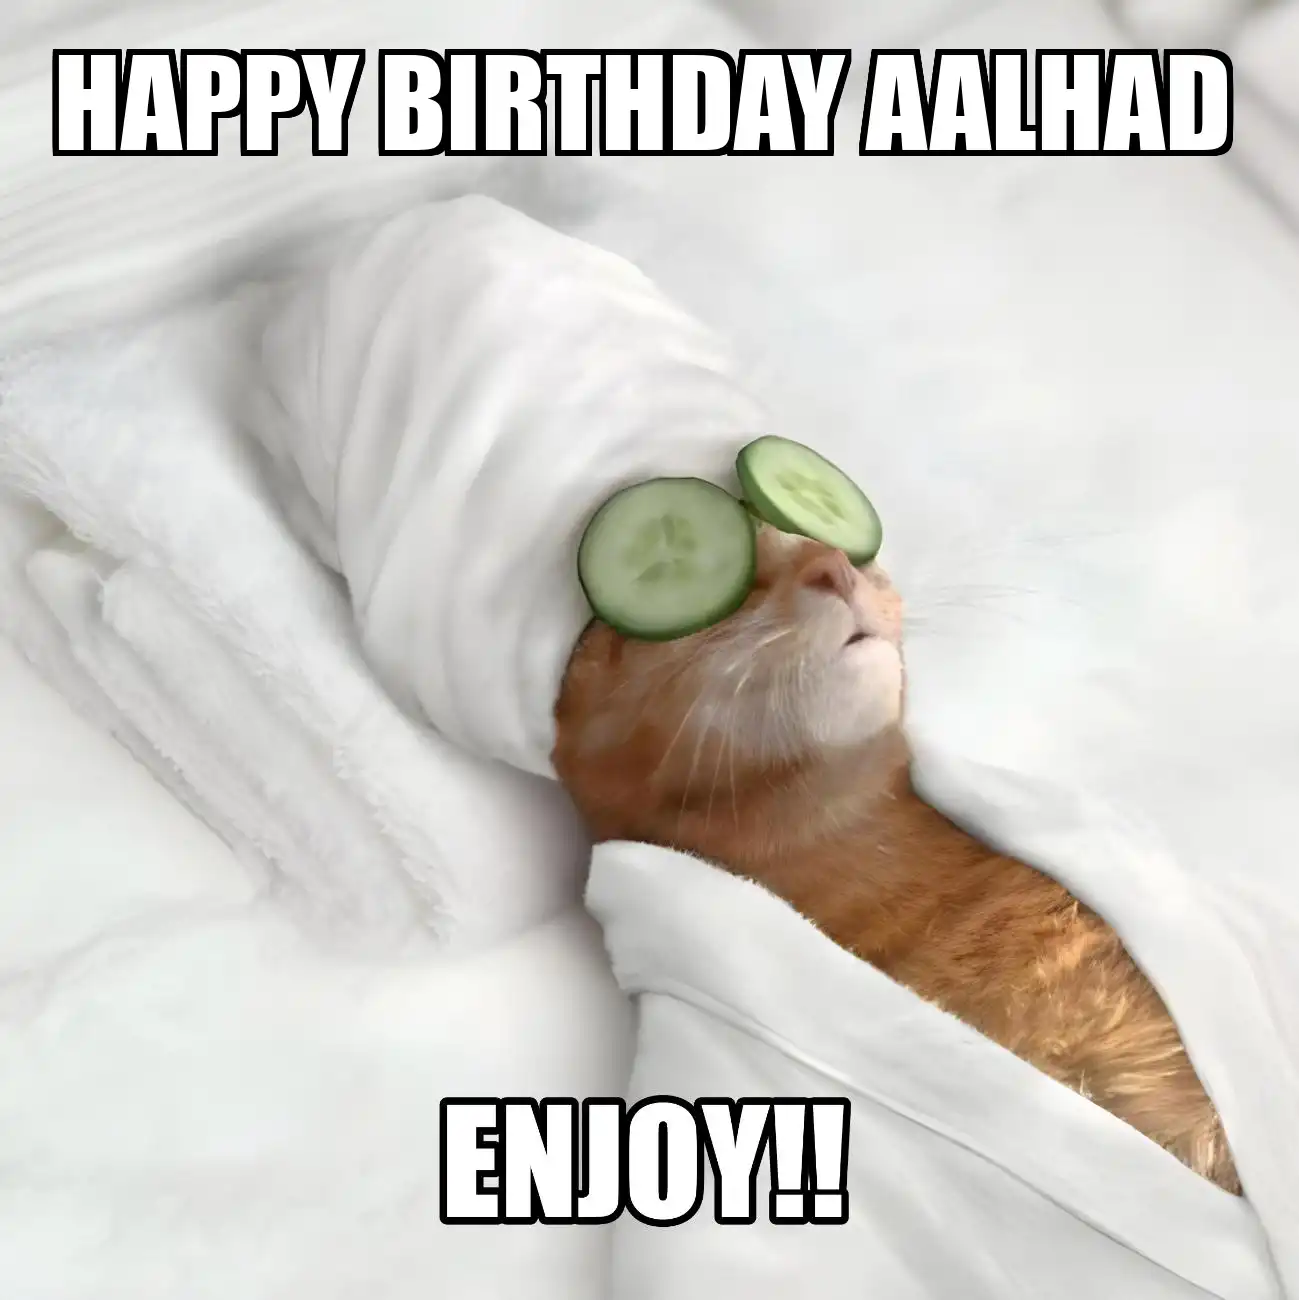 Happy Birthday Aalhad Enjoy Cat Meme